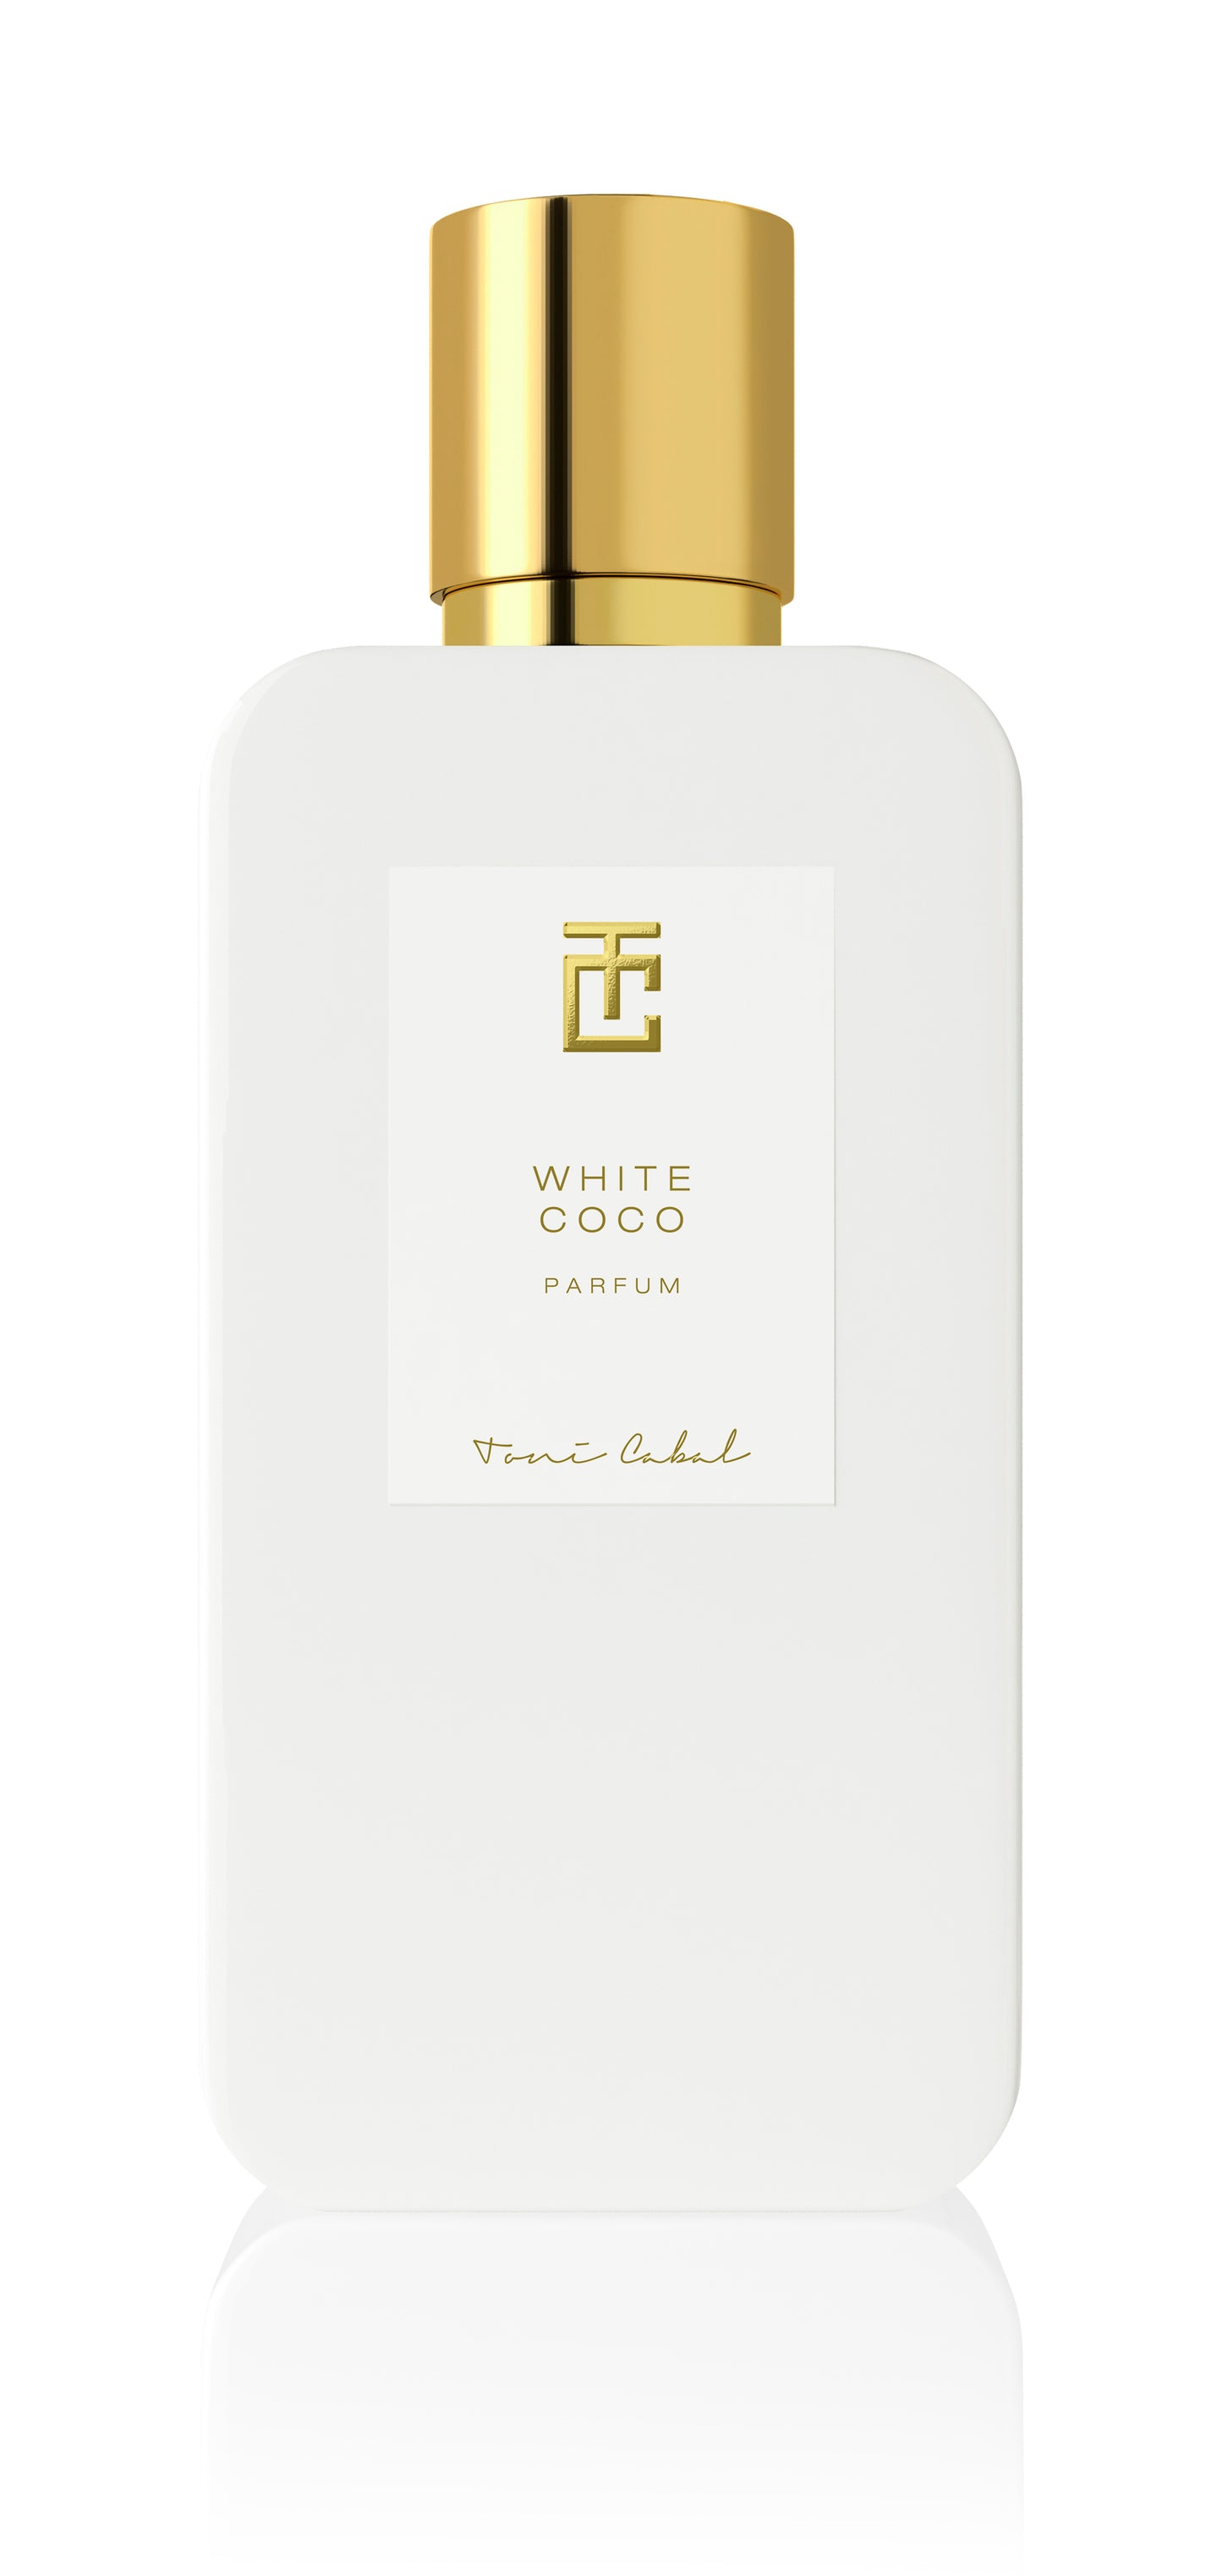 WHITE COCO